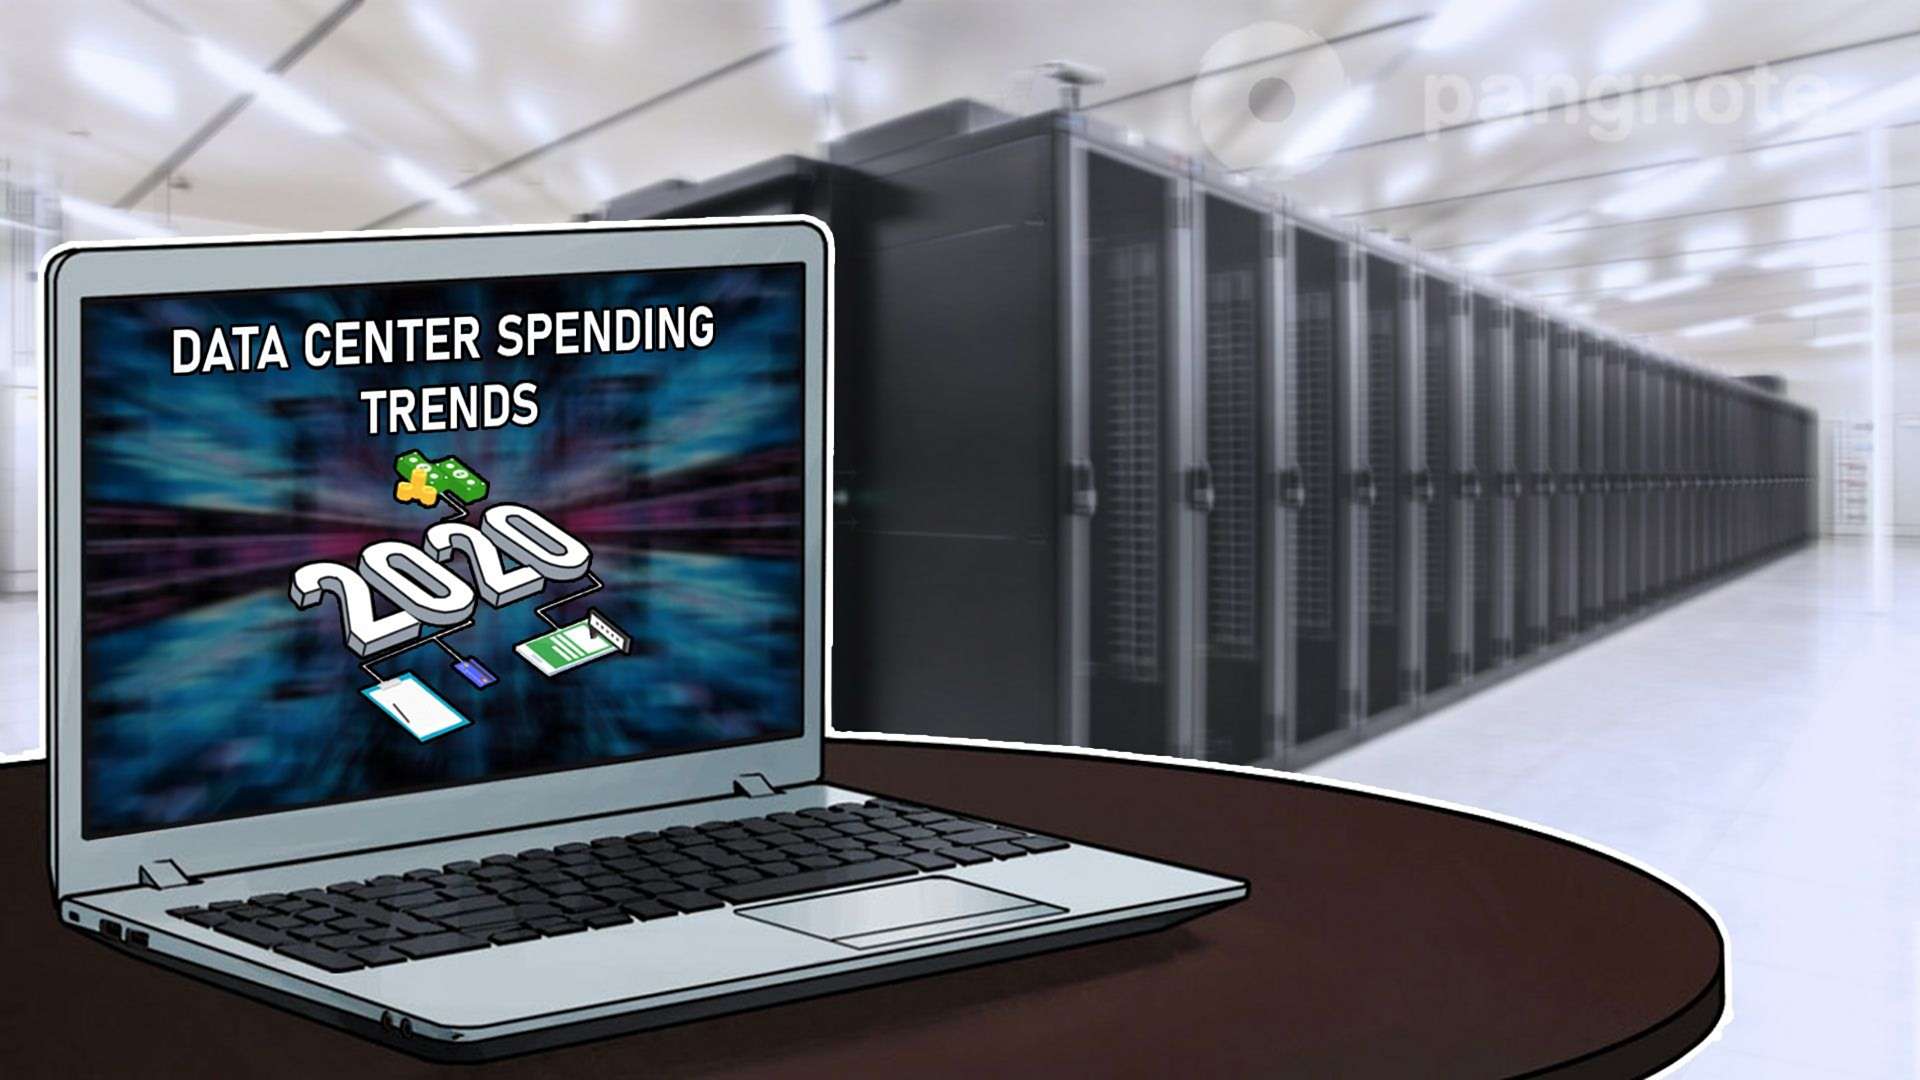 Data center spending trends in 2020